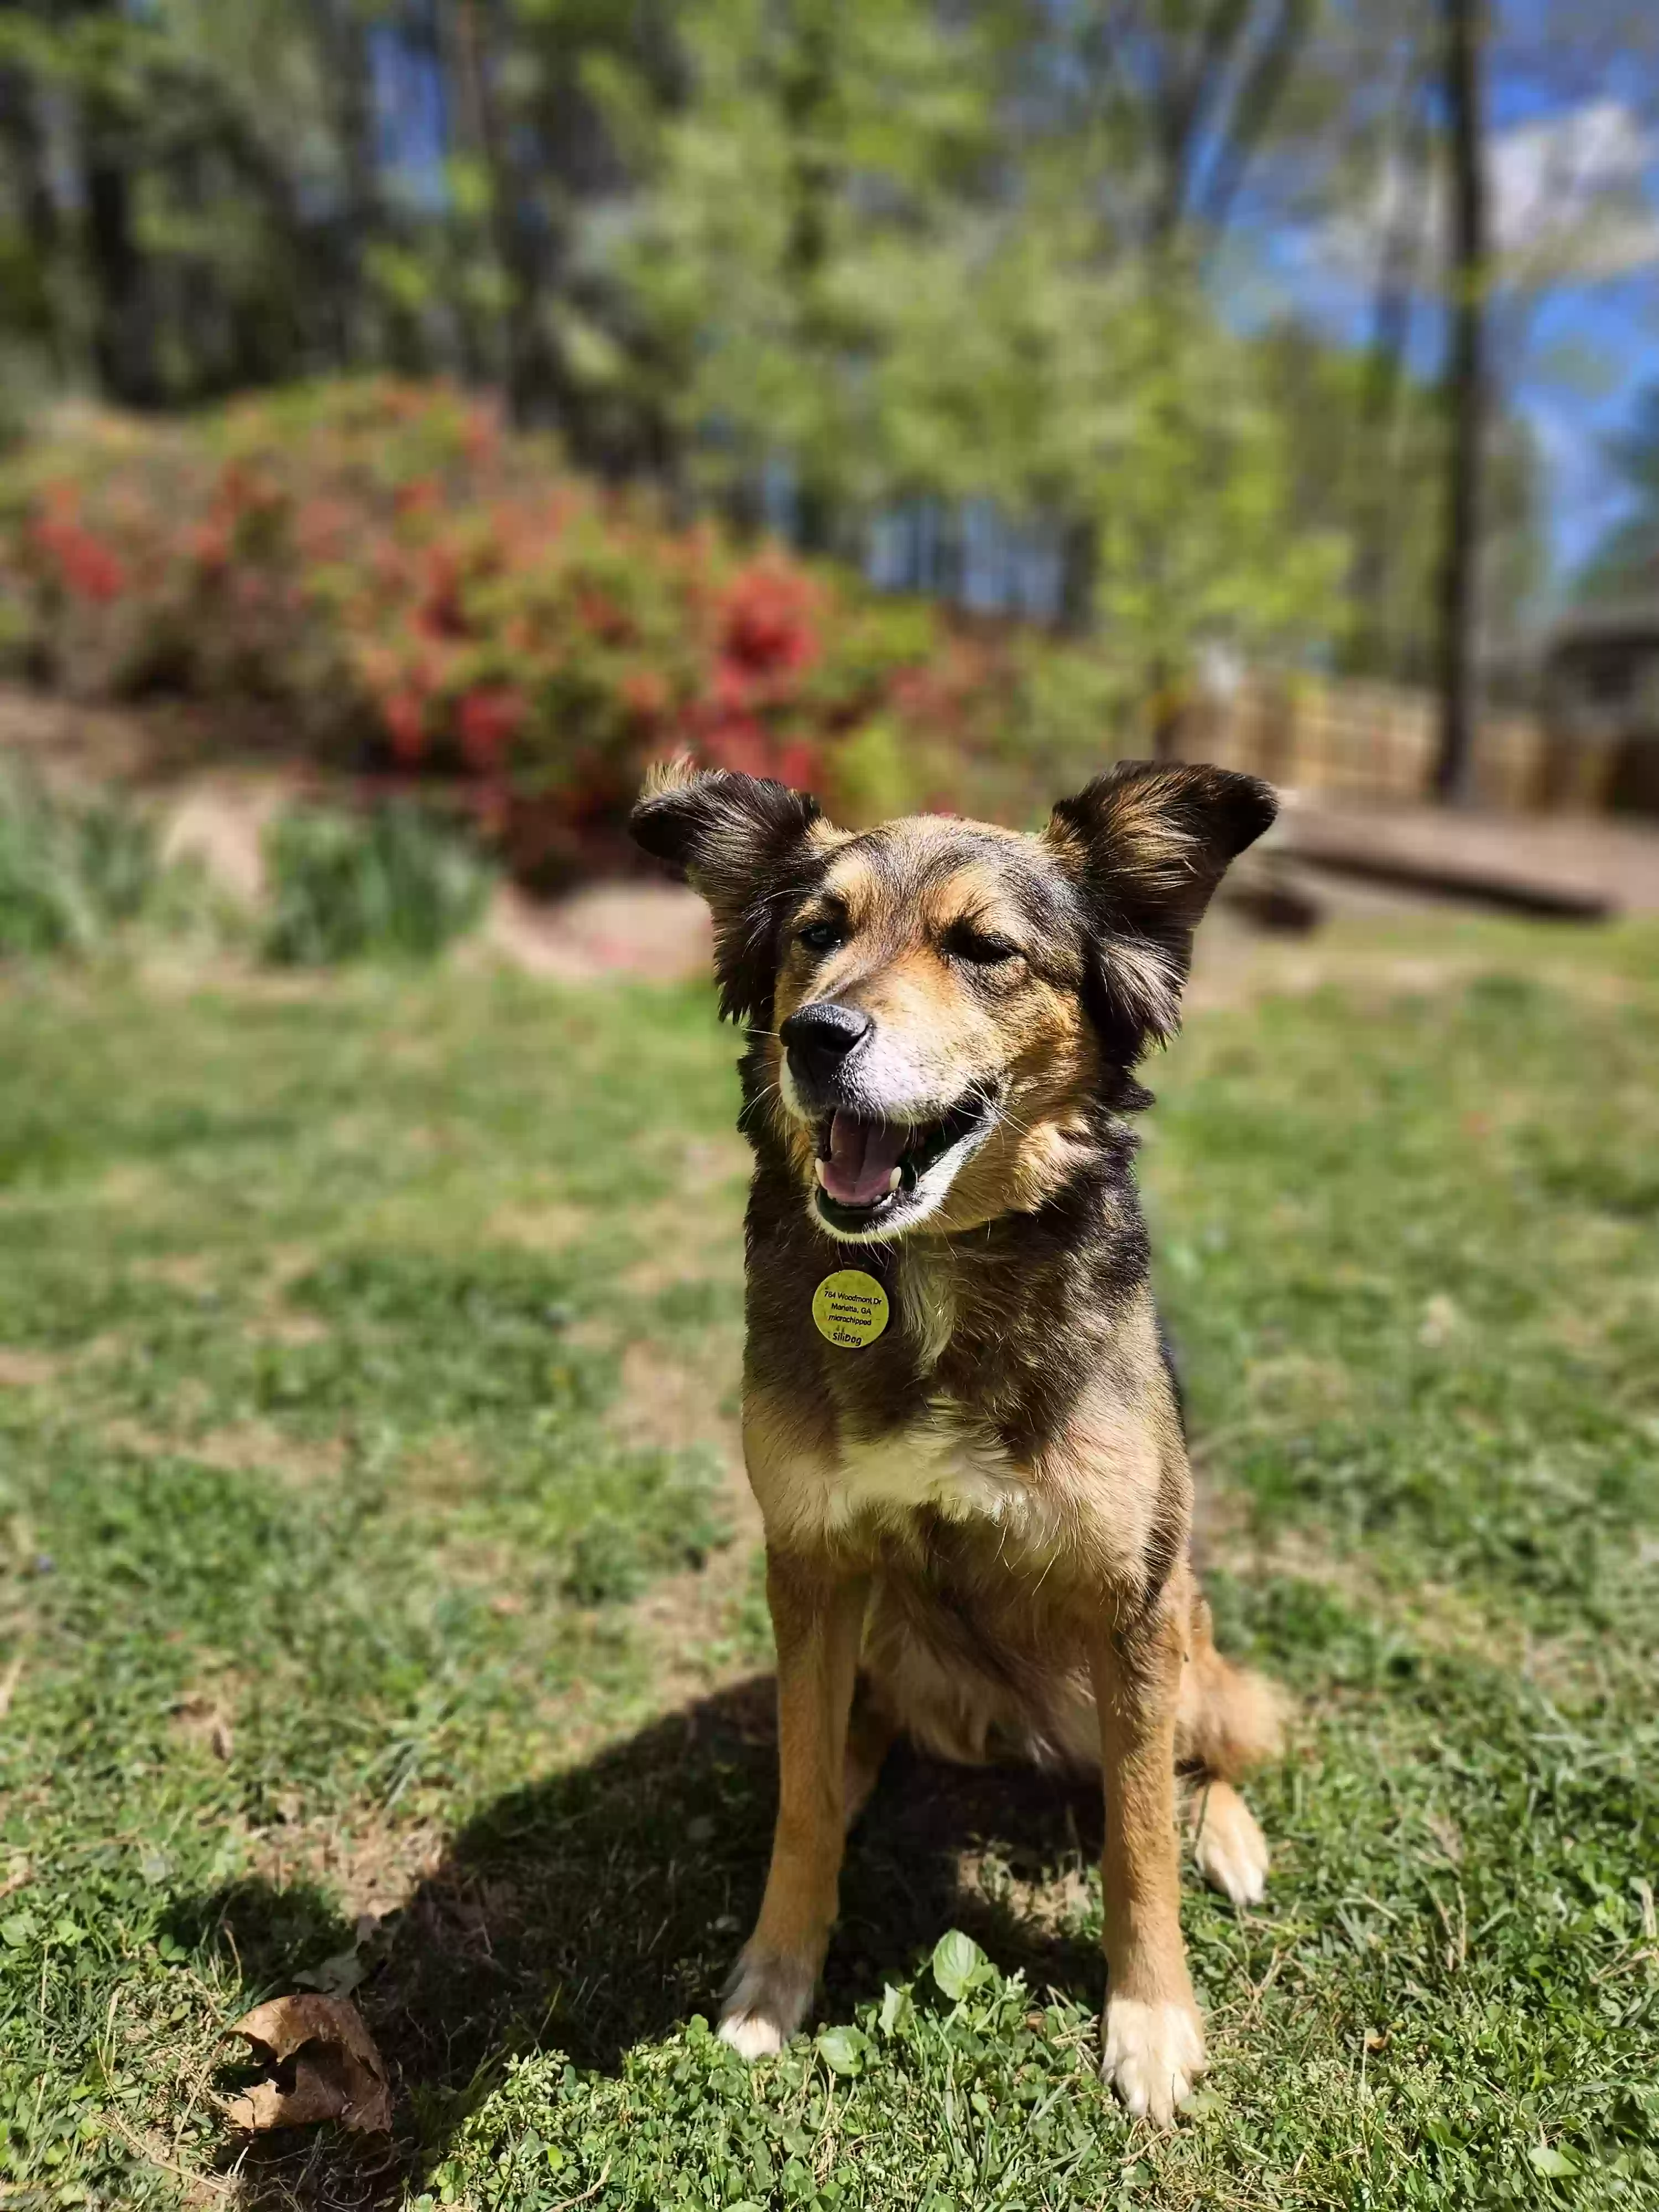 adoptable Dog in Marietta,GA named Scar